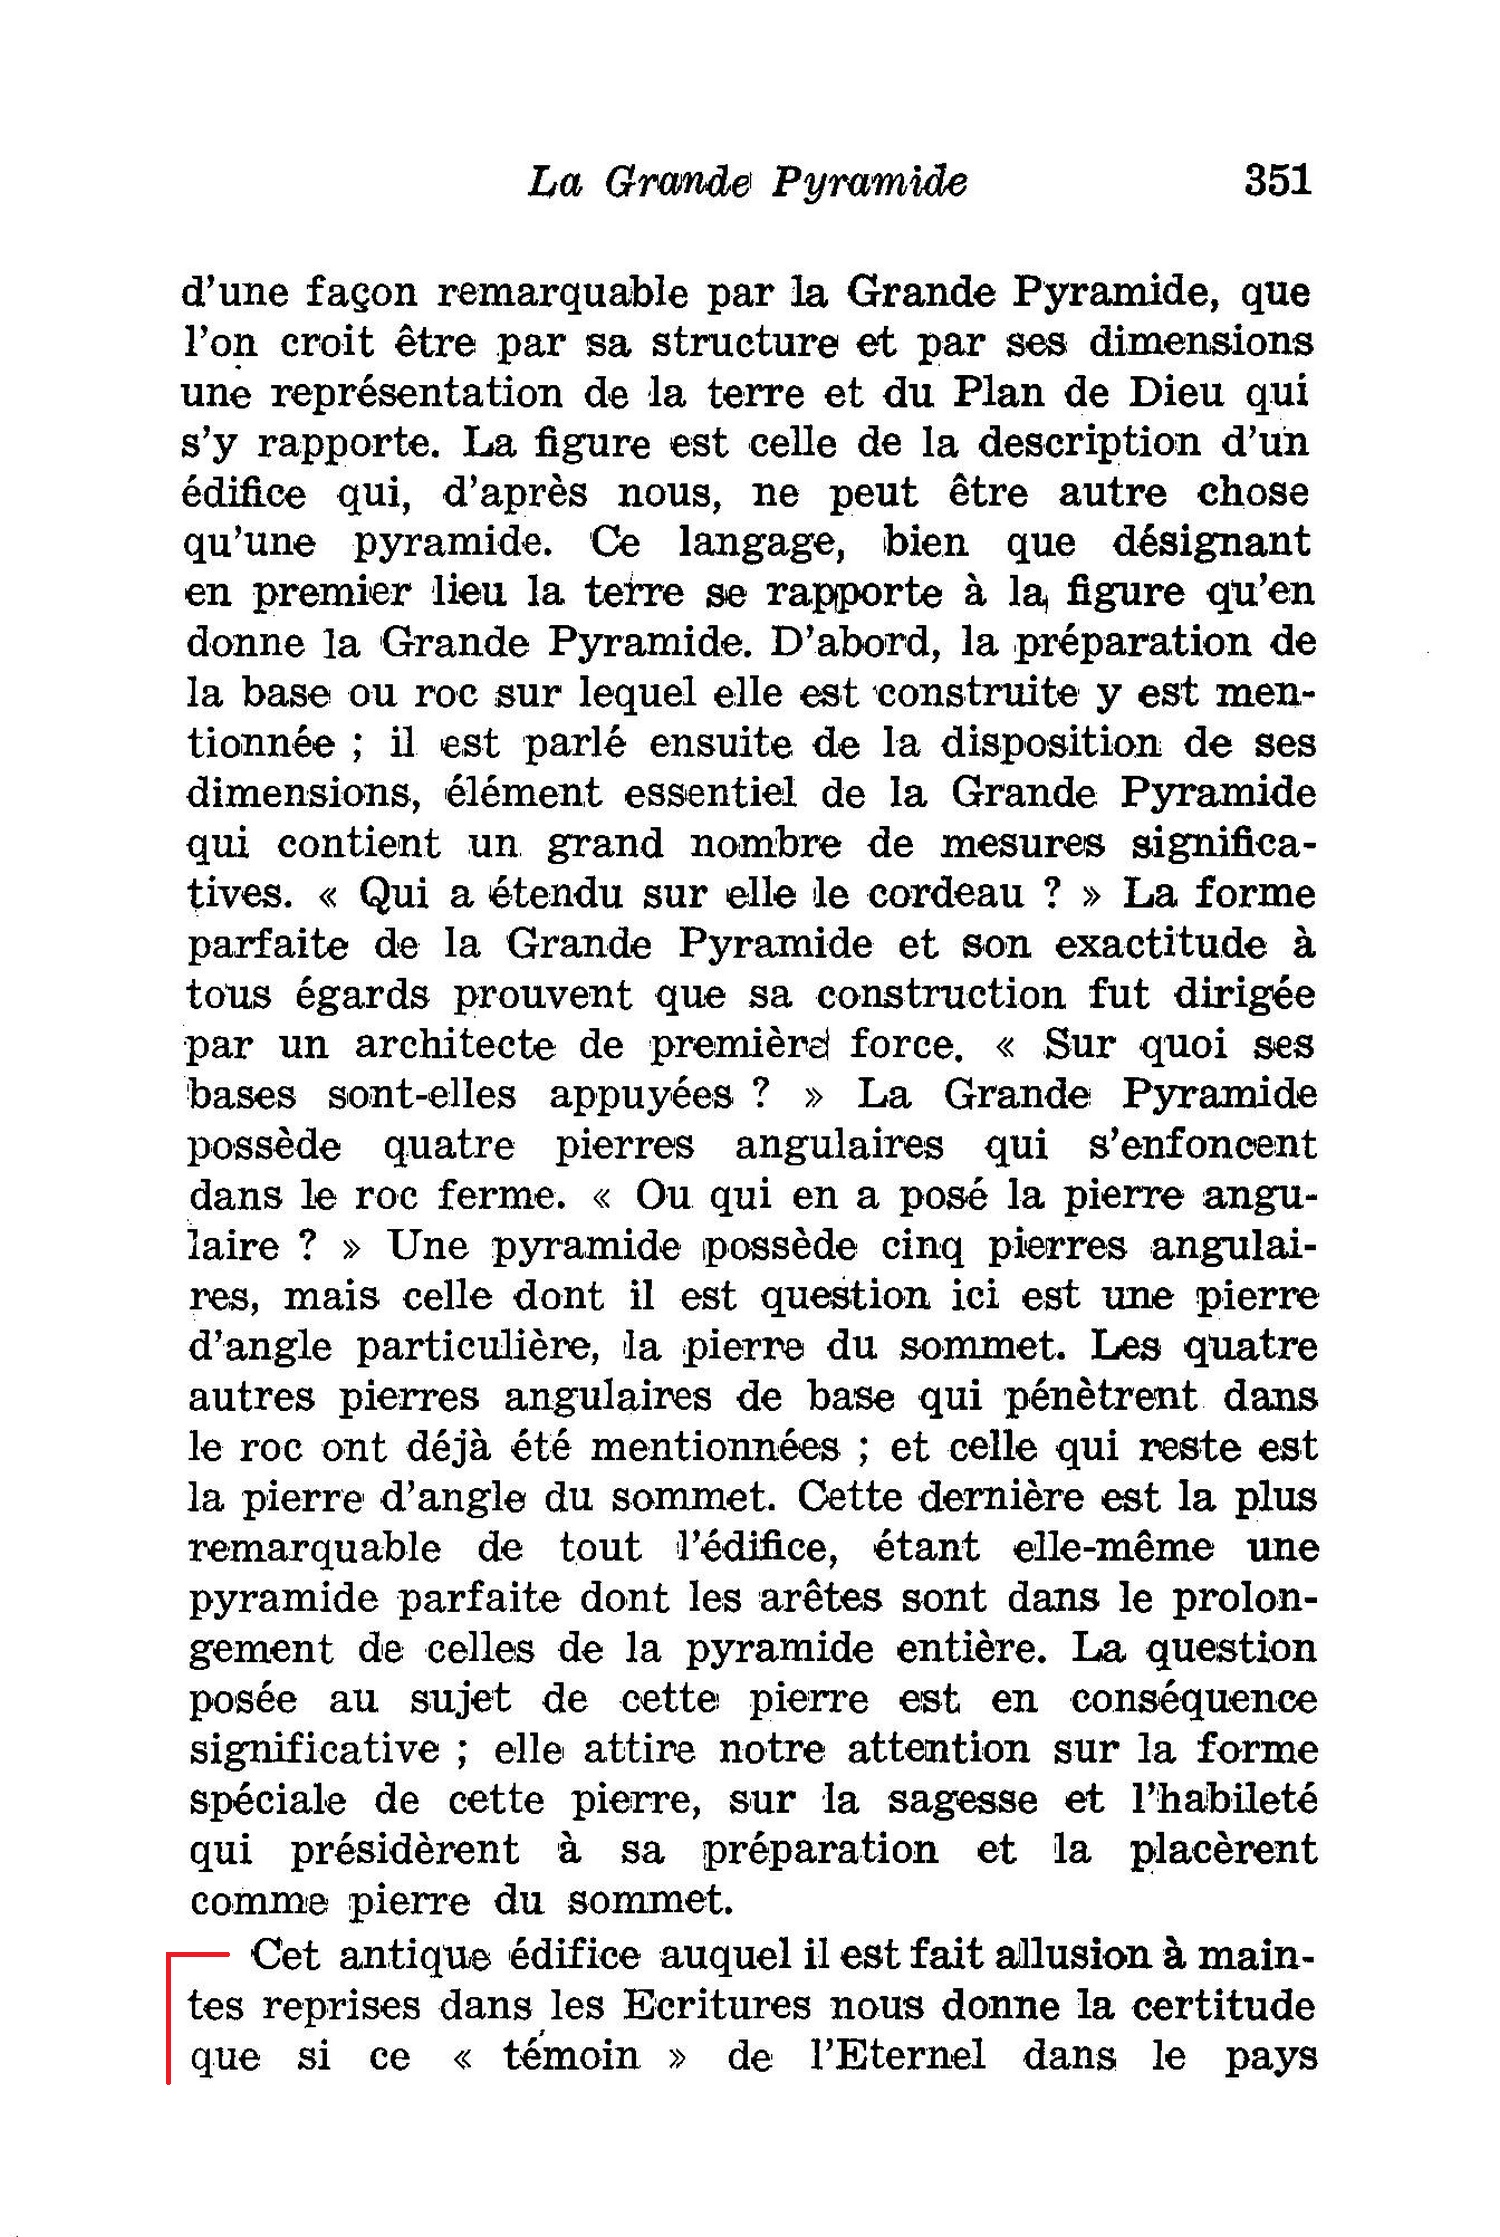 La grande pyramide d'Egypte 1891_Etudes_dans_les_Ecritures_Vol3_Que_ton_regne_vienne1891_Vol3_Ch10_p351b_-_pyra